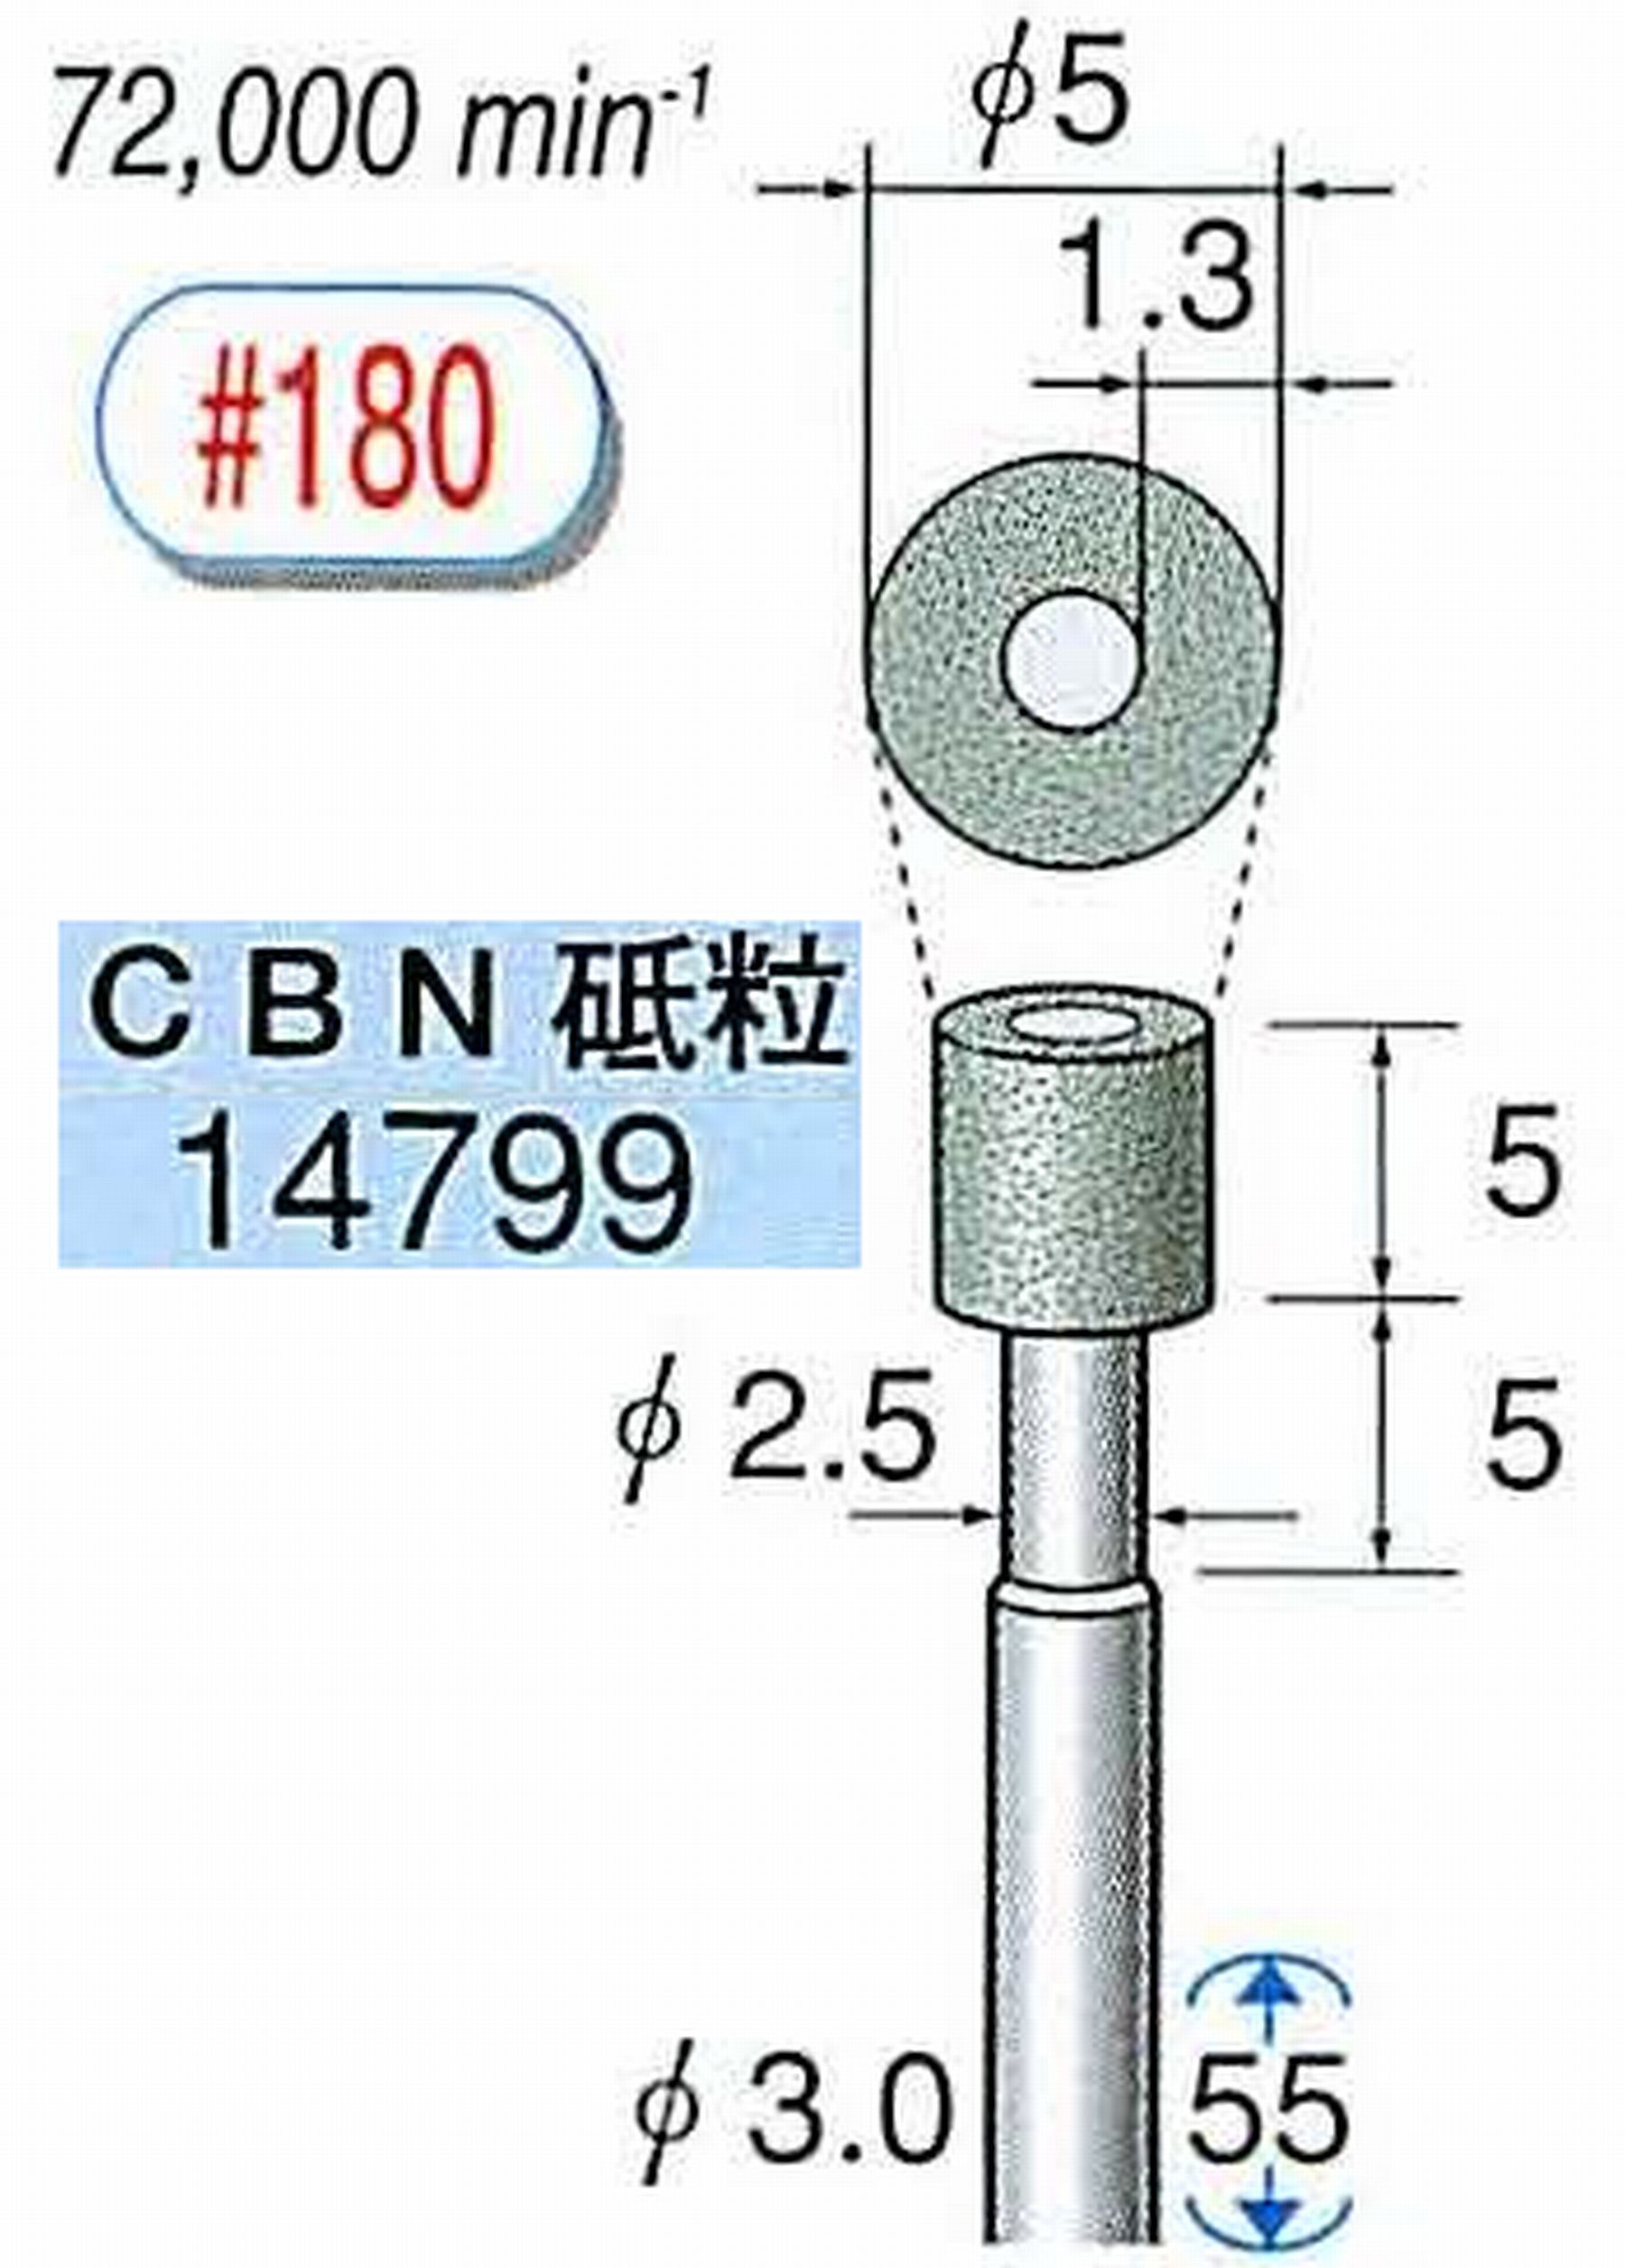 ナカニシ/NAKANISHI ビトリファイドダイヤモンド砥石 CBN砥粒 軸径(シャンク)φ3.0mm 14799